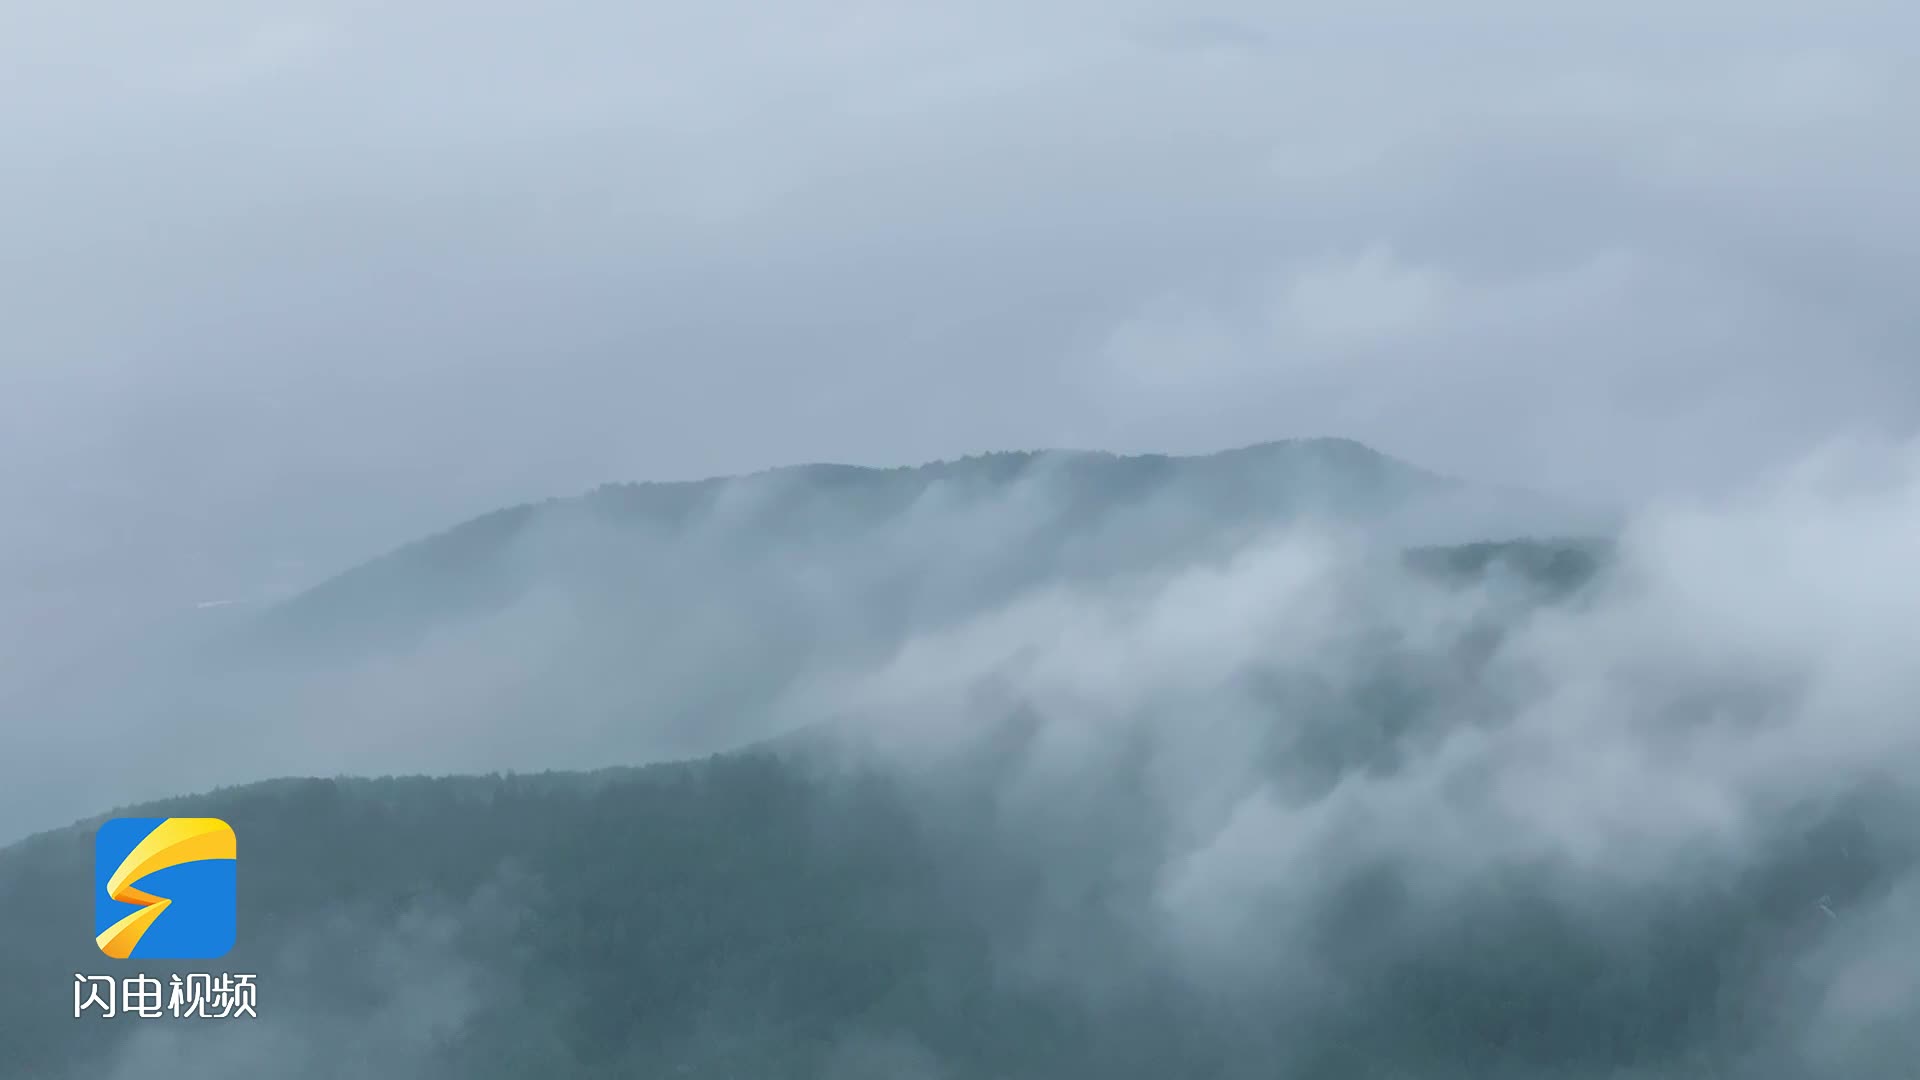 枣庄现平流雾景观 气象万千宛如仙境